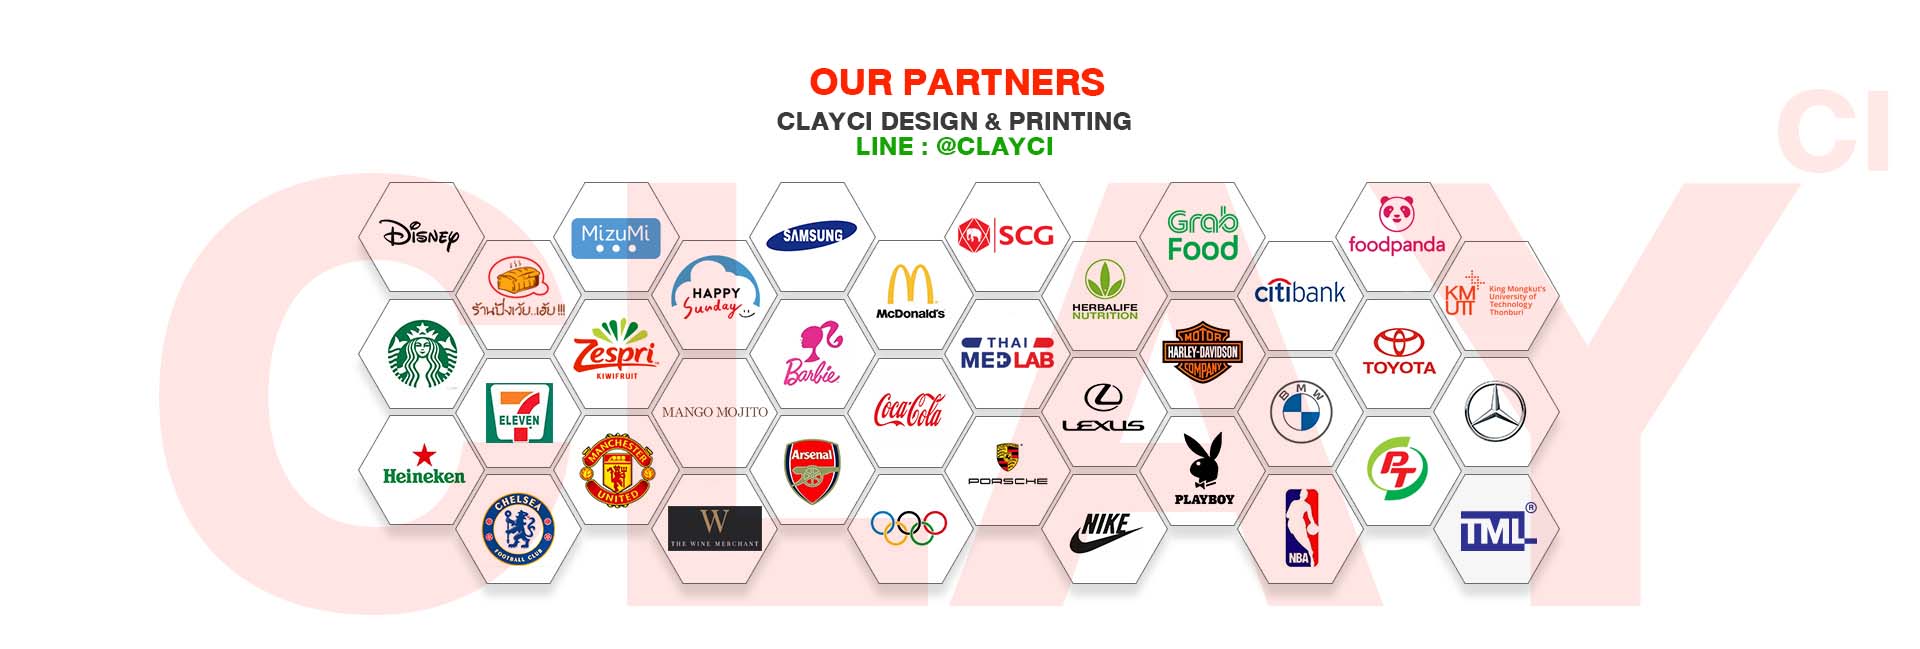 CLAYCI-รับผลิตบรรรจุภัณฑ์ our partner ลูกค้าของเรา พาร์ทเนอร์ เกี่ยวกับเคลชี่